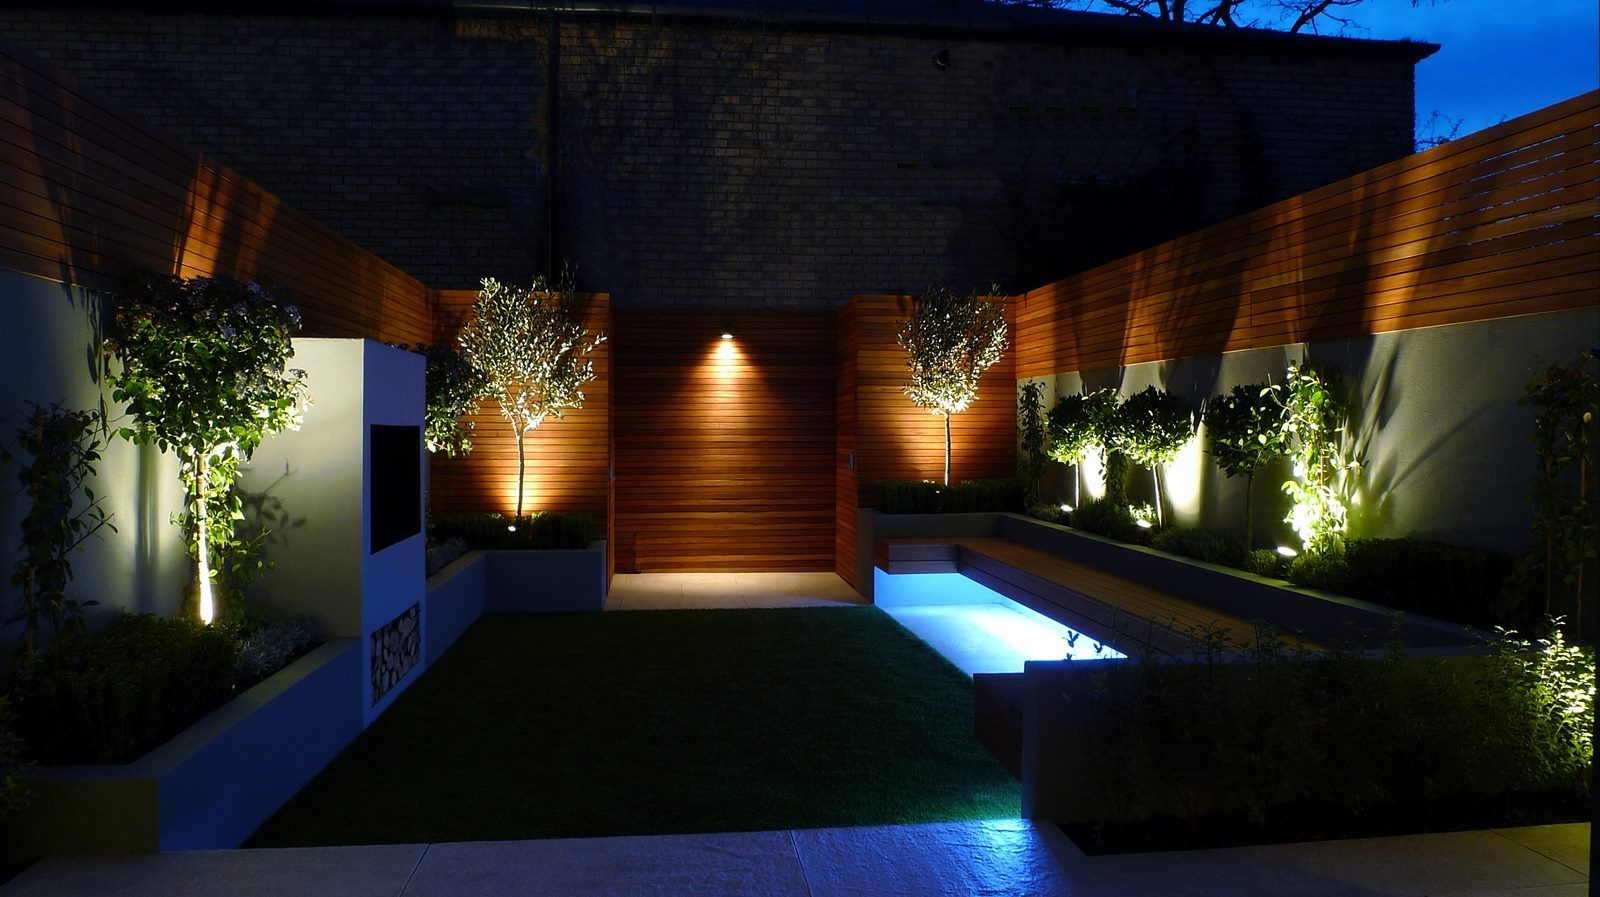 Jardines Nocturnos, Akasha espacios iluminados Akasha espacios iluminados 클래식스타일 정원